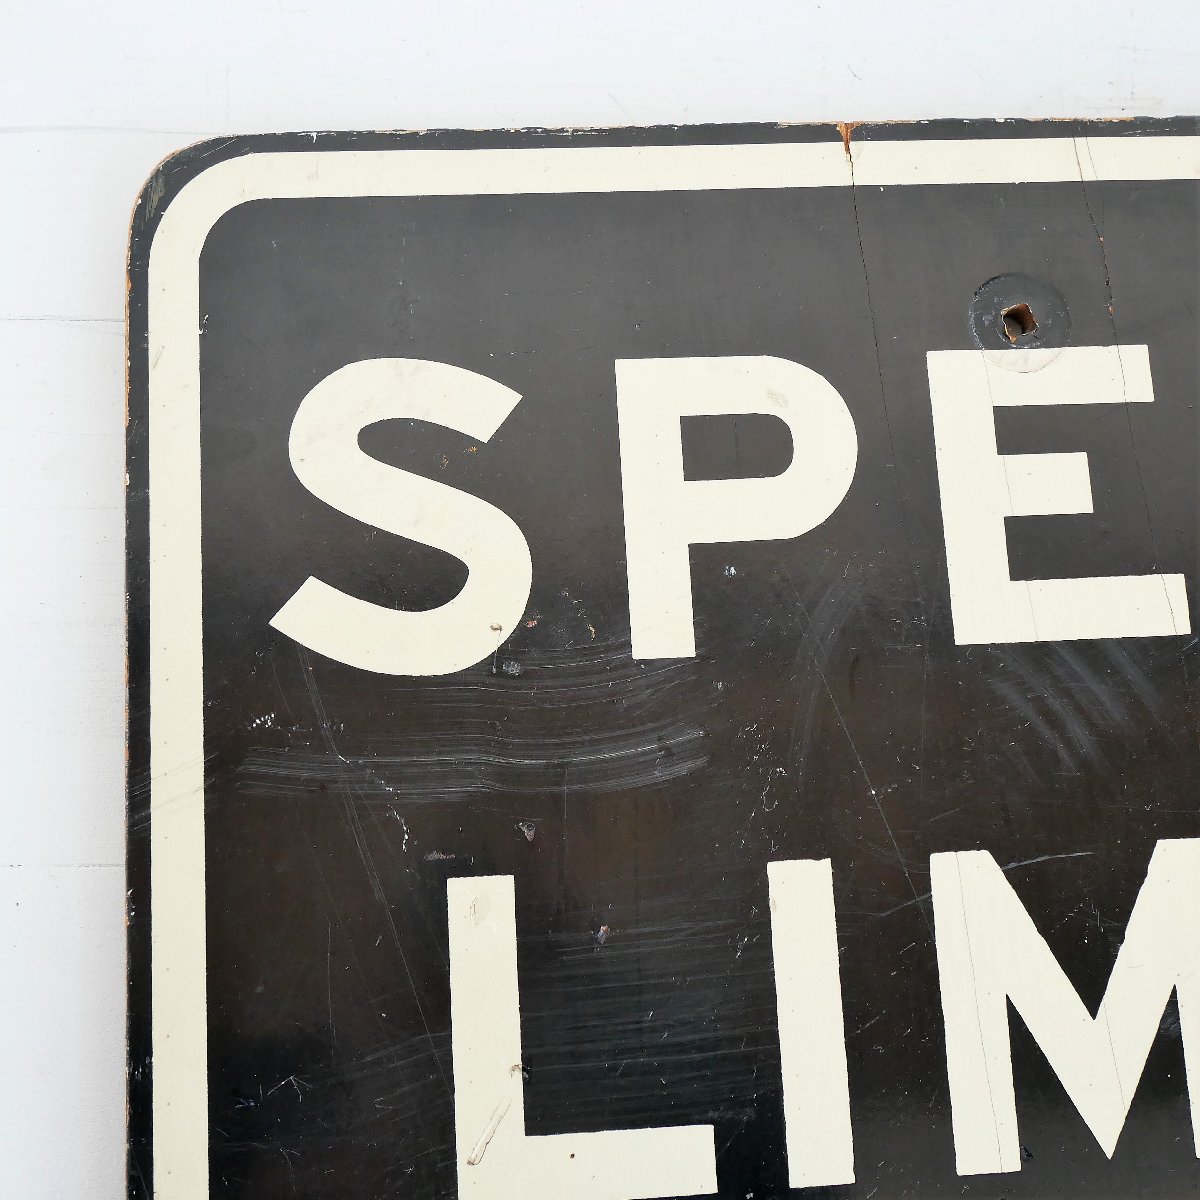 アメリカ ヴィンテージ ロードサイン 速度制限 道路標識 ストリート